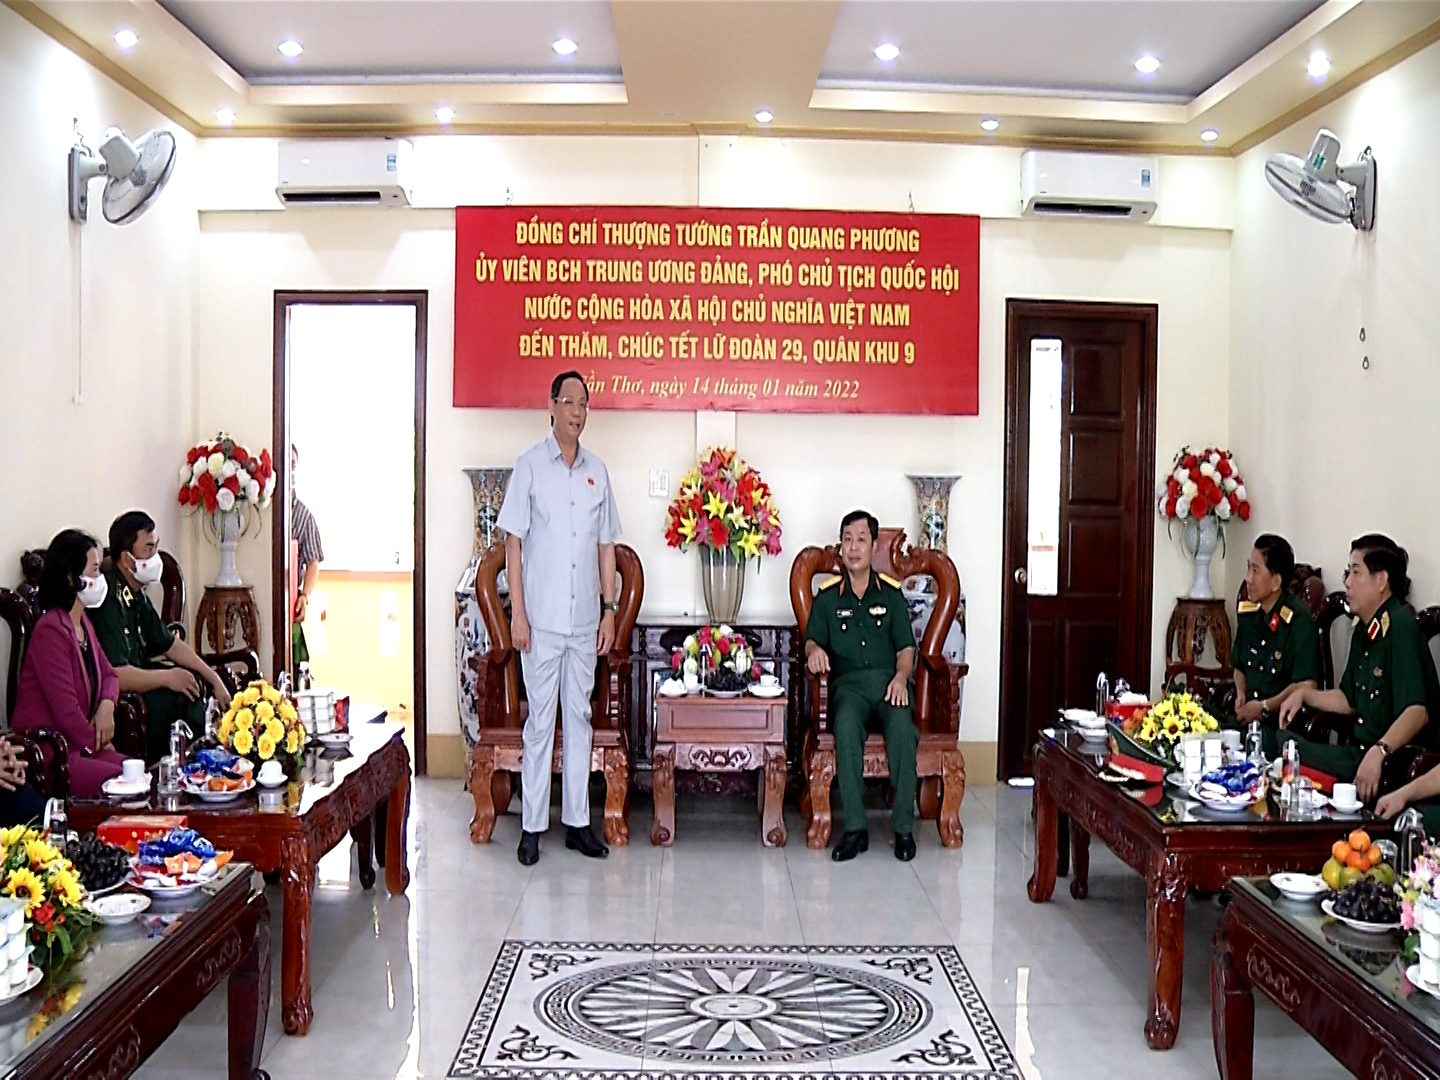 	Phó Chủ tịch Quốc hội, Thượng tướng Trần Quang Phương cùng đoàn công tác trò chuyện với Lữ đoàn Thông tin